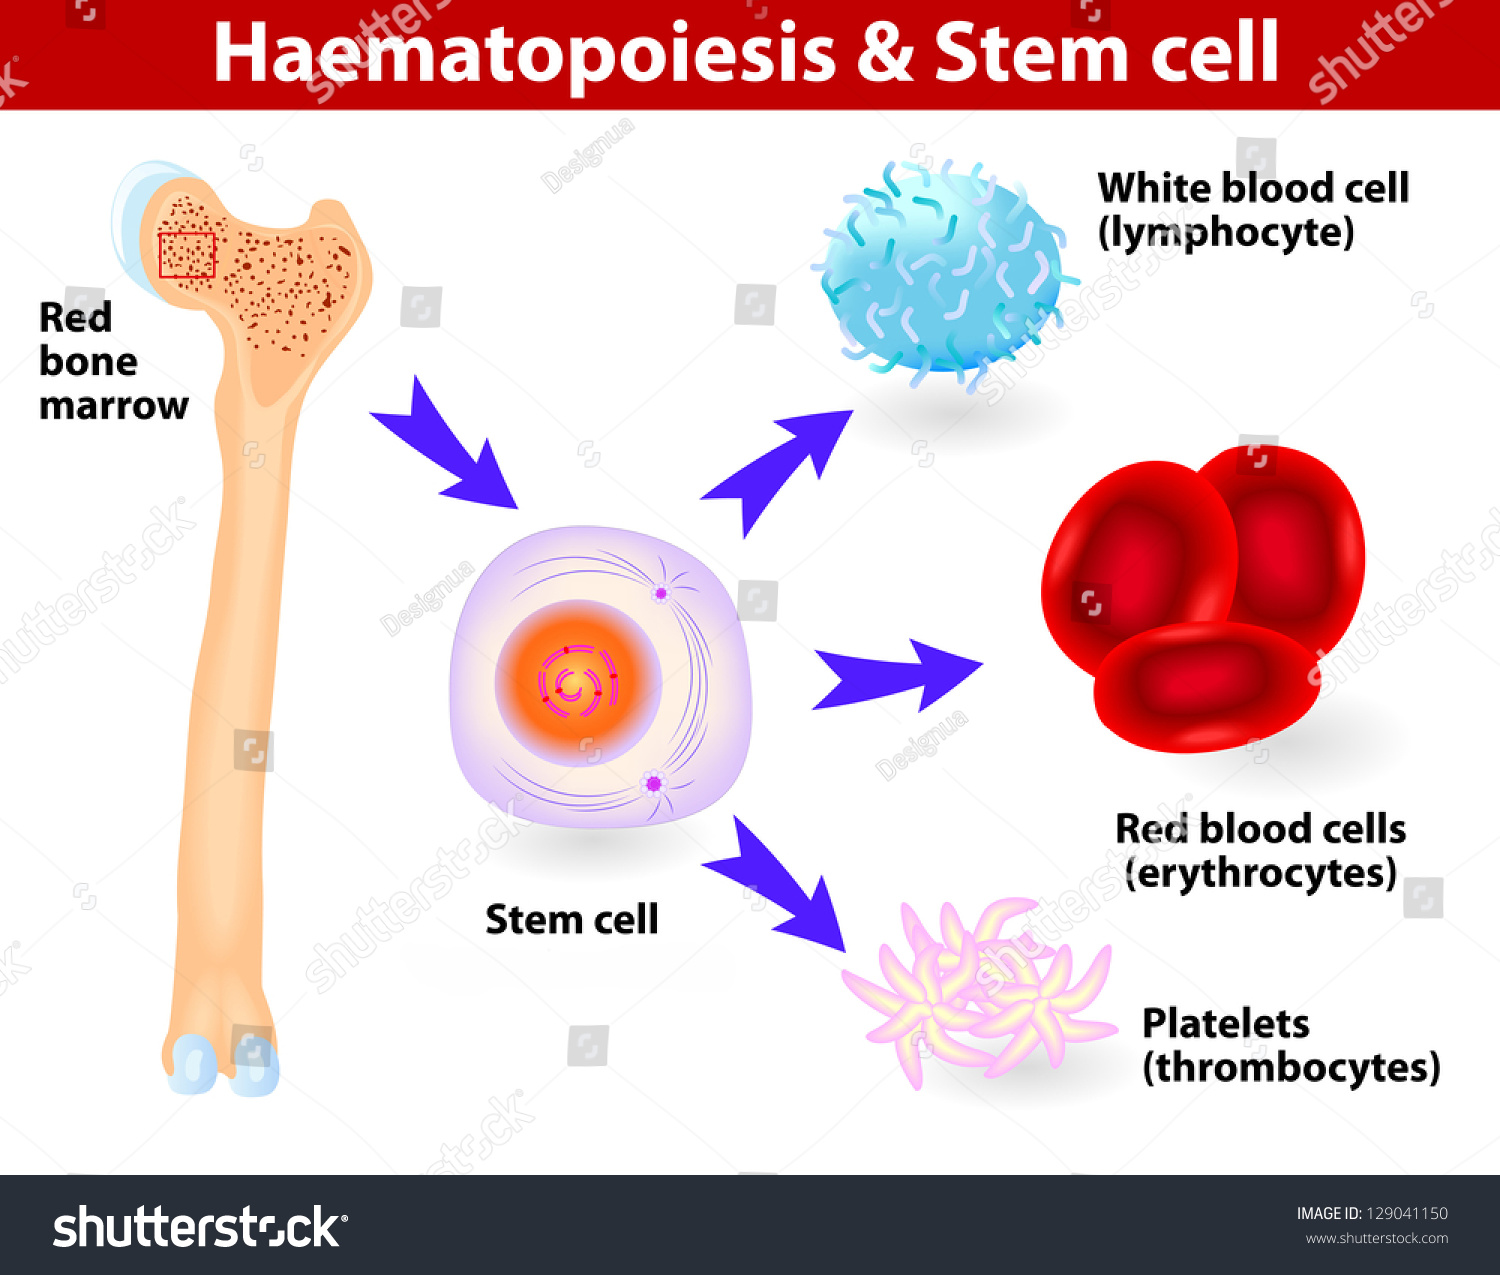 Mature haematopoietic stem cells